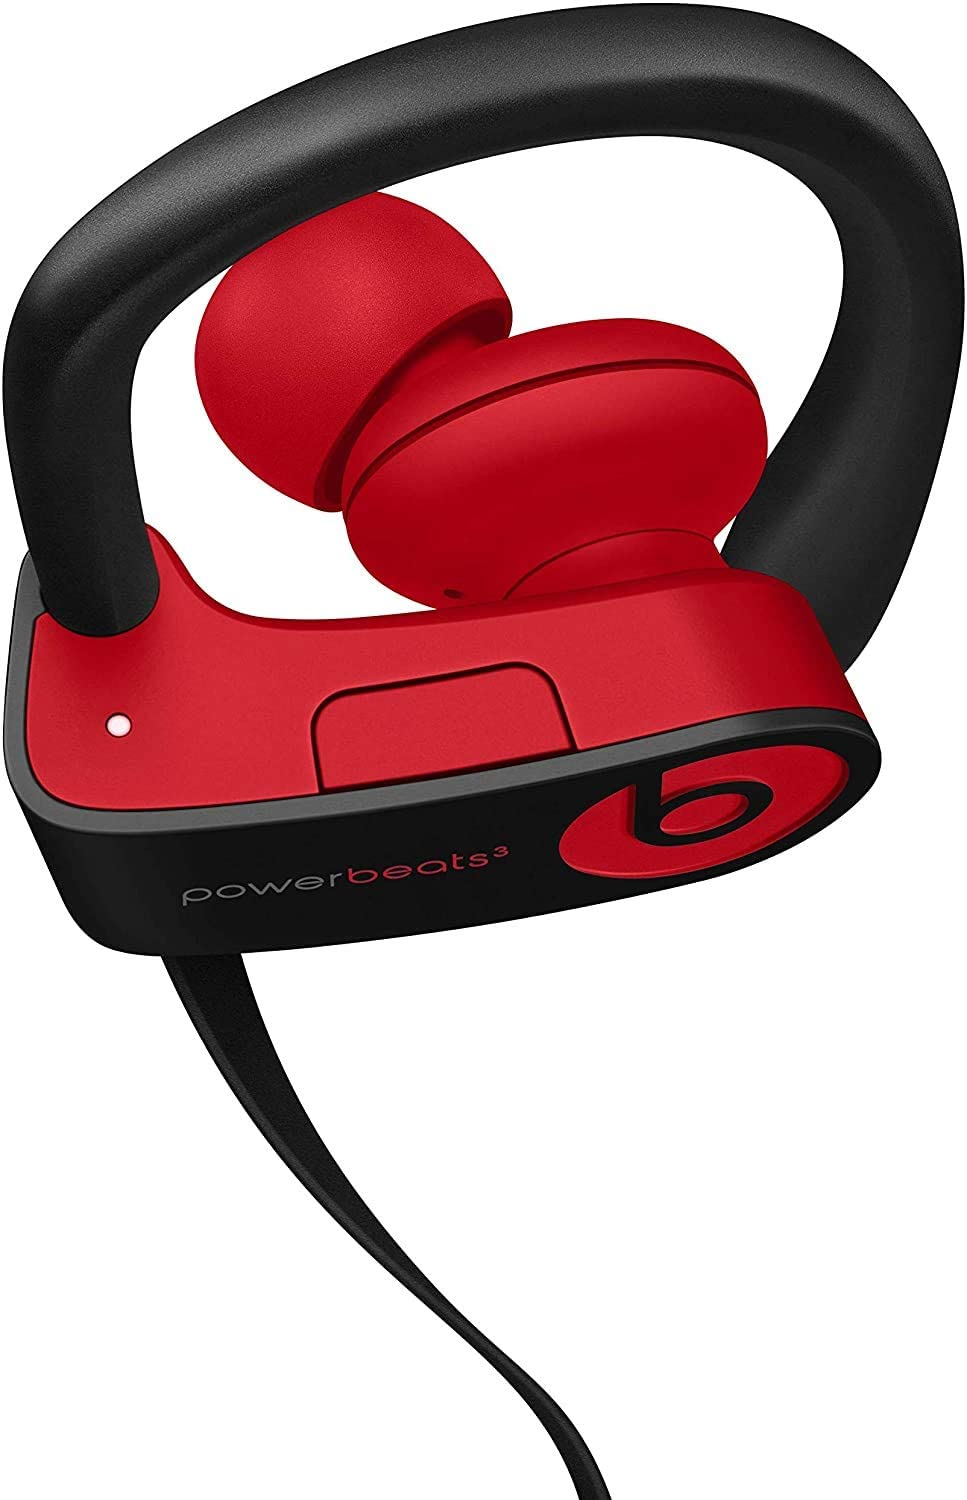 beats-powerbeats3-wireless-earphones-w/-apple-w1-chip-defiant black-red-5